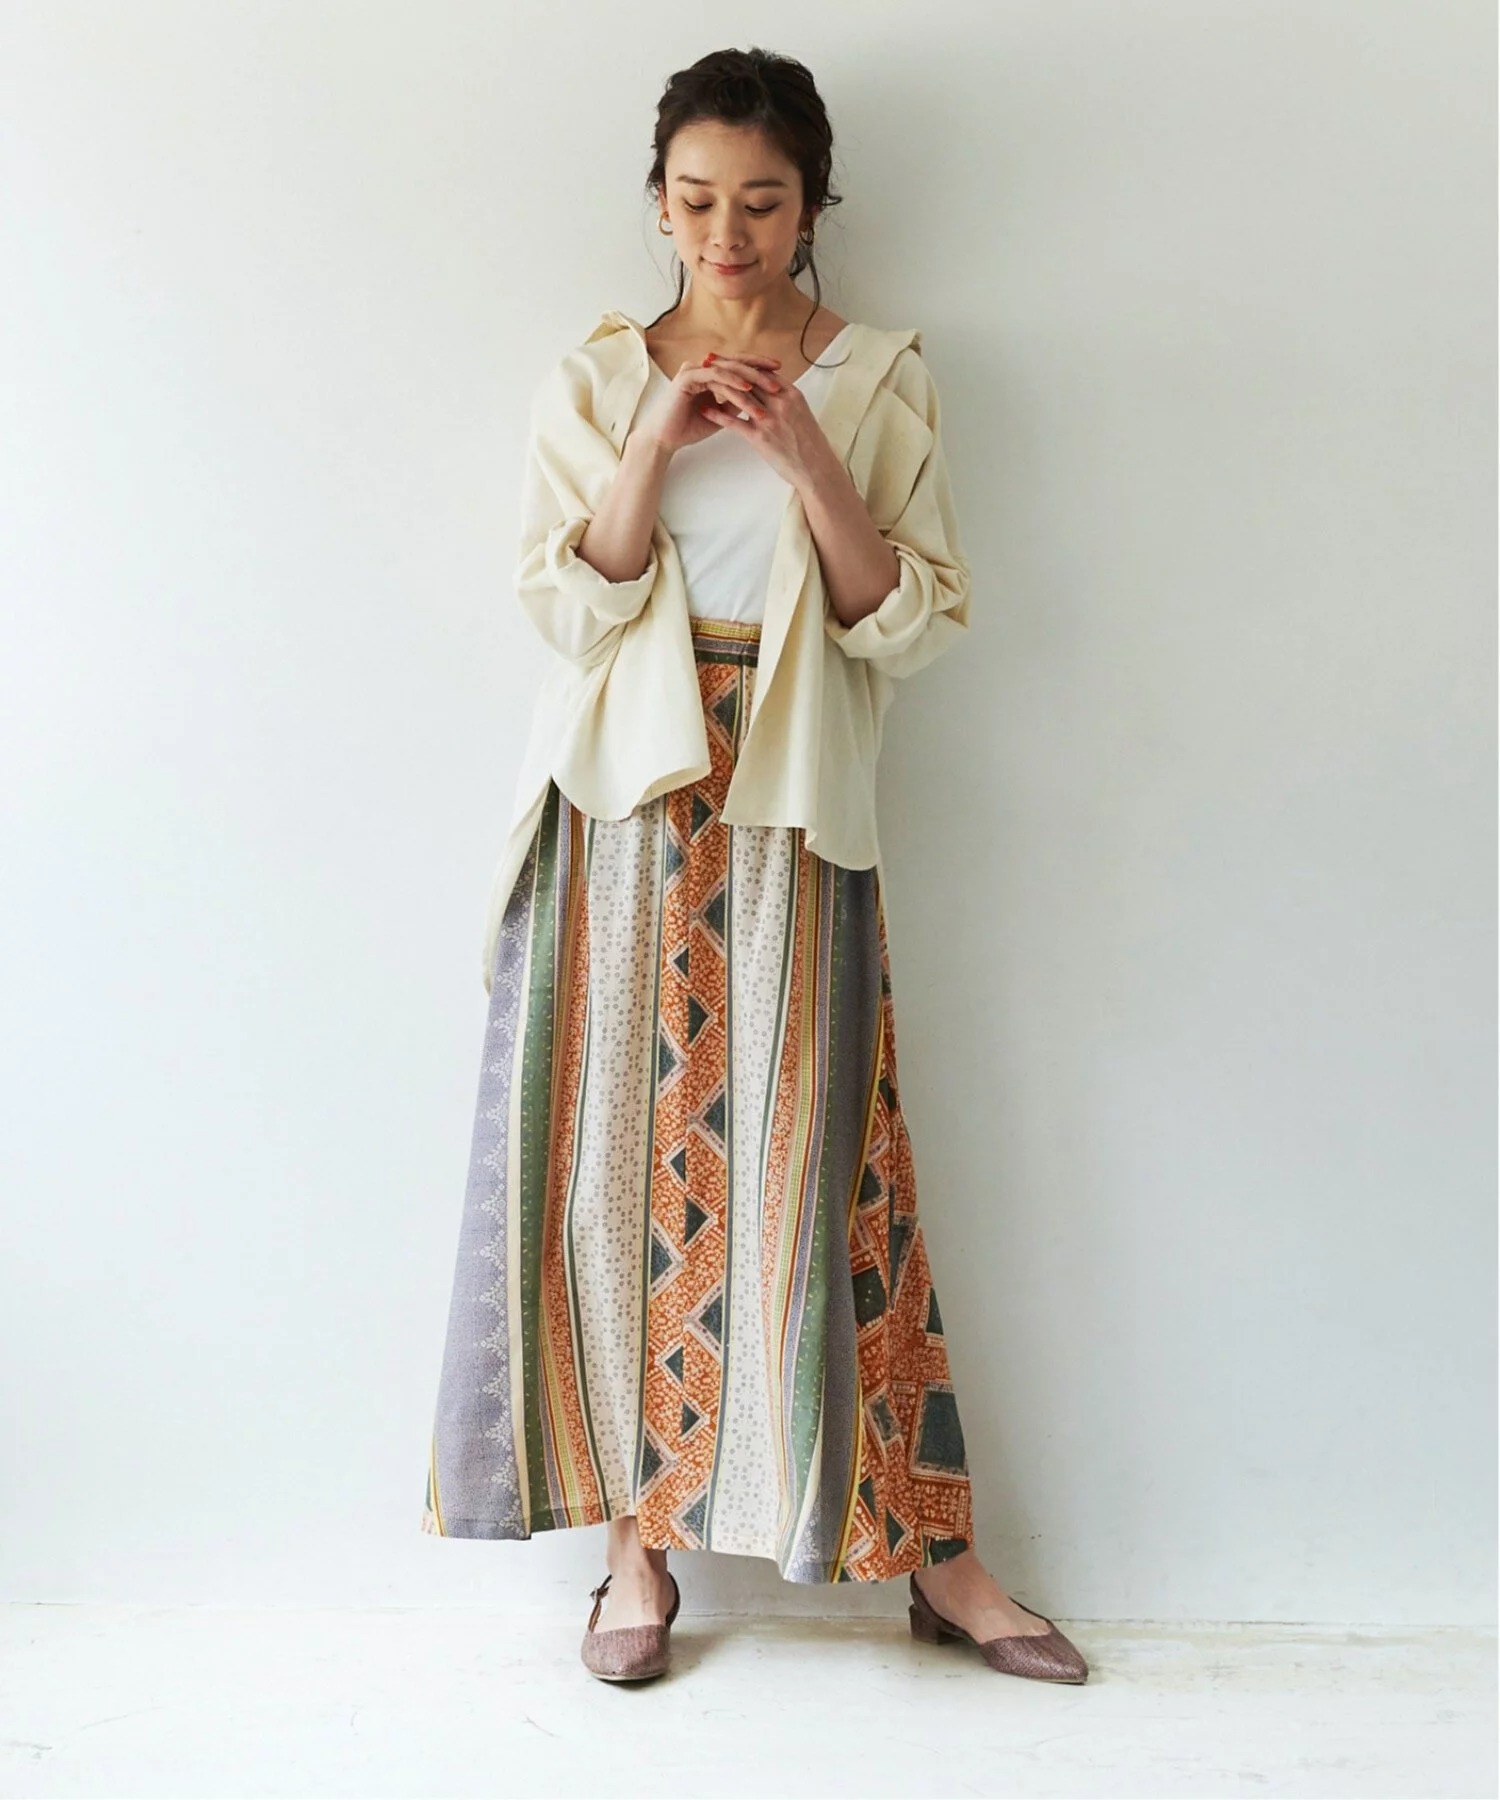 日本品牌 拼布印花直條裙 三色 size